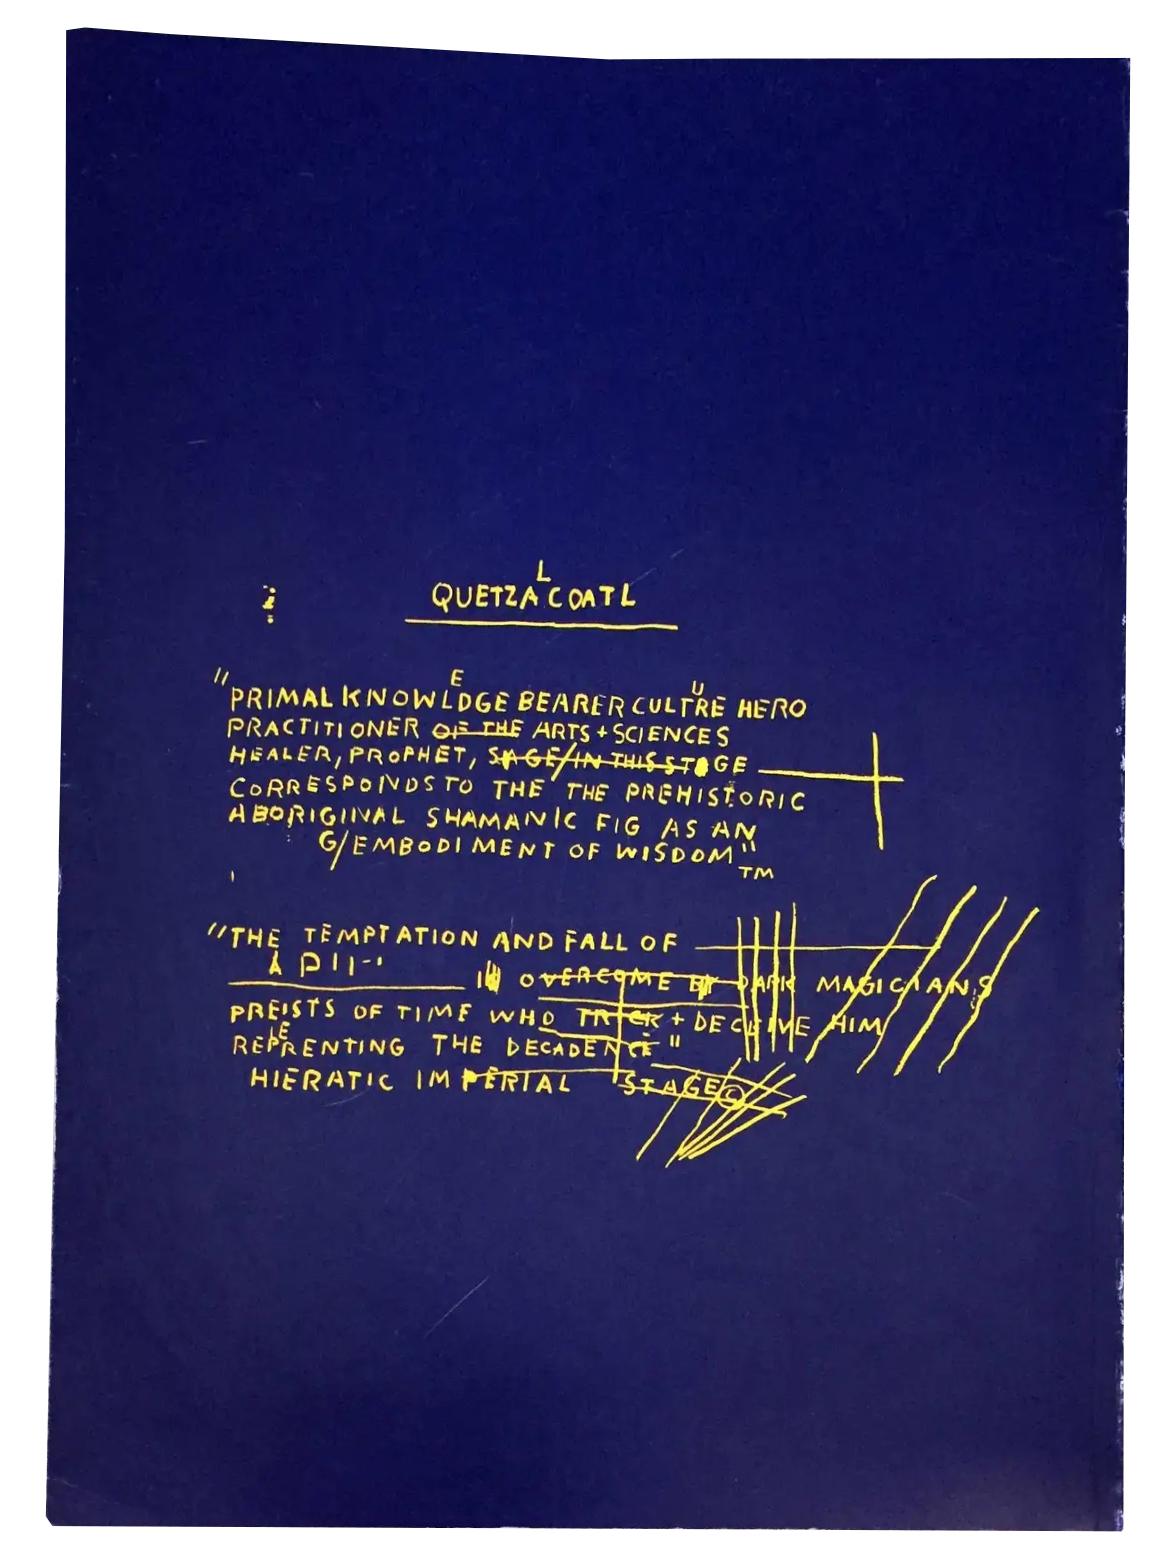 Peintures de Basquiat 1981-1984 ( Catalogue de la galerie Basquiat Fruitmarket 1984)  - Pop Art Print par after Jean-Michel Basquiat